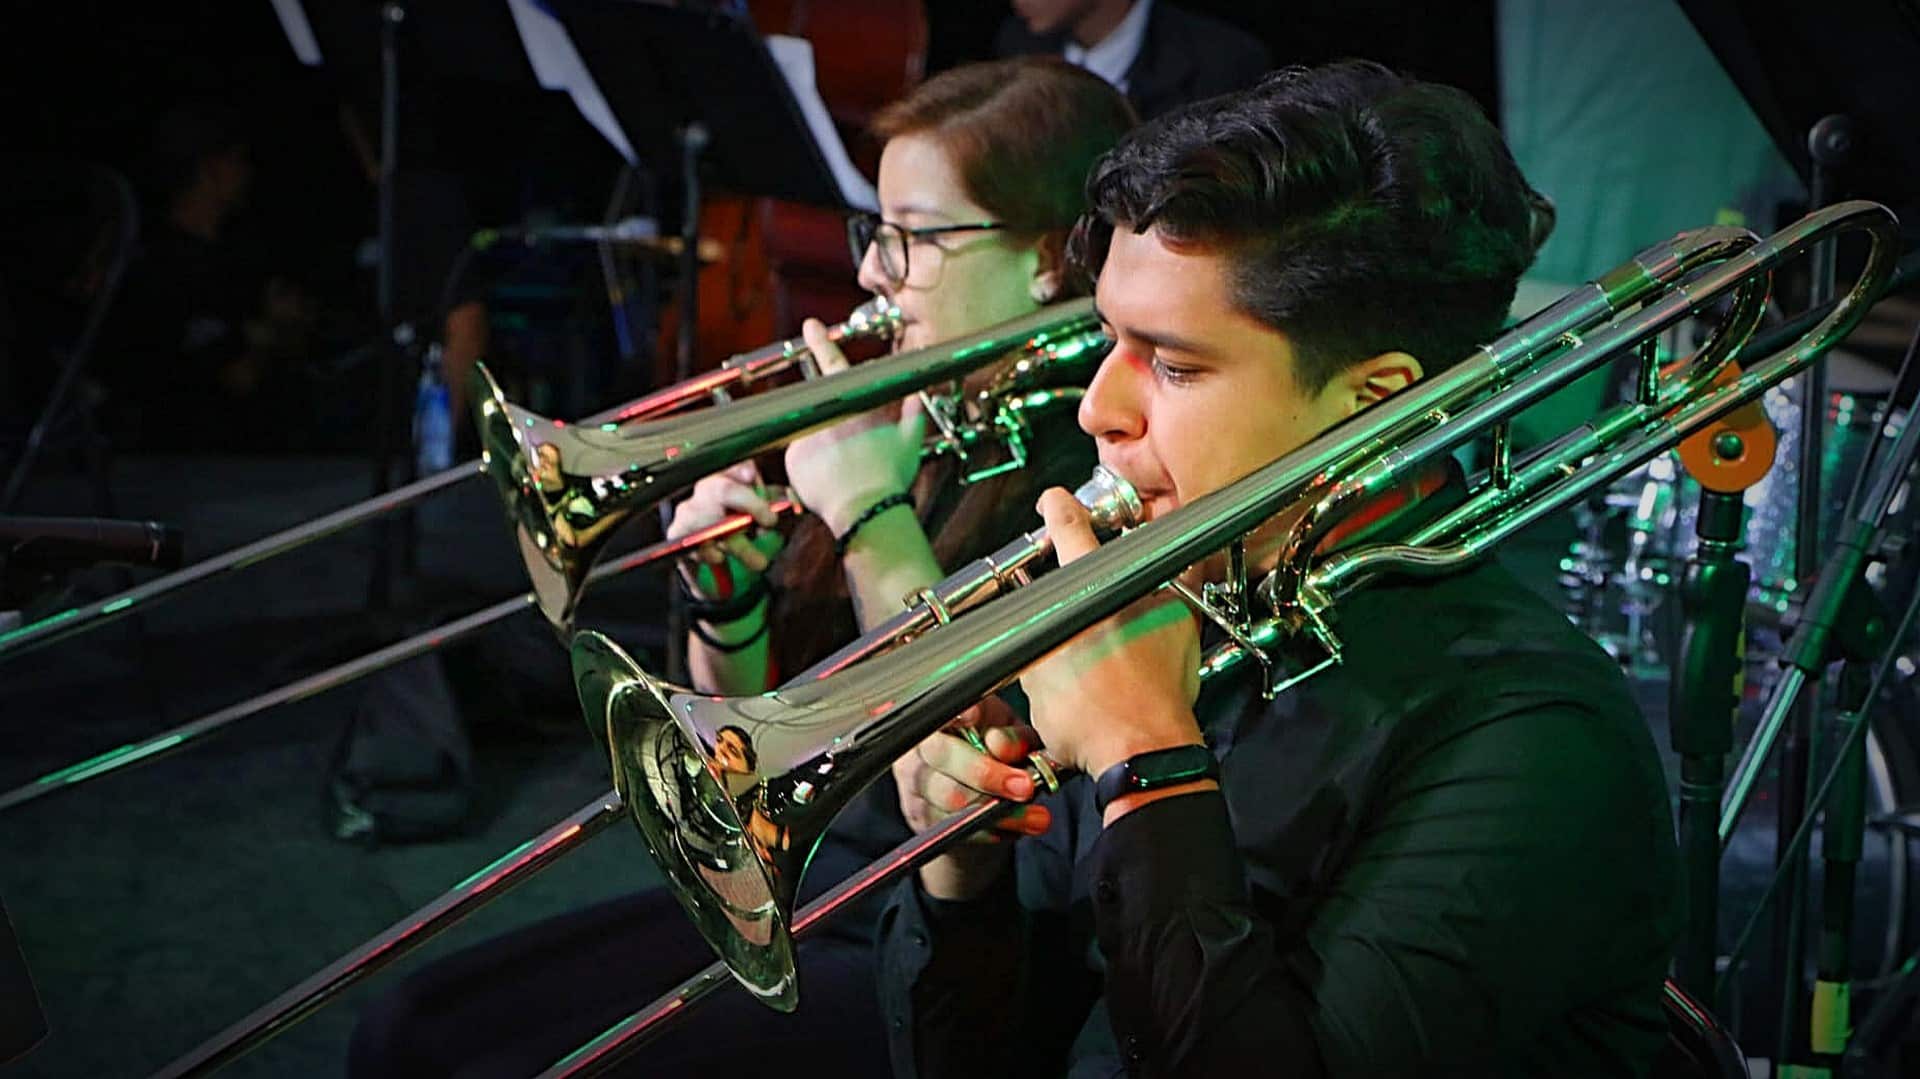 Instituto Nacional de la Música hará pruebas de aptitud para estudiantes entre los 7 y 15 años sin conocimientos musicales